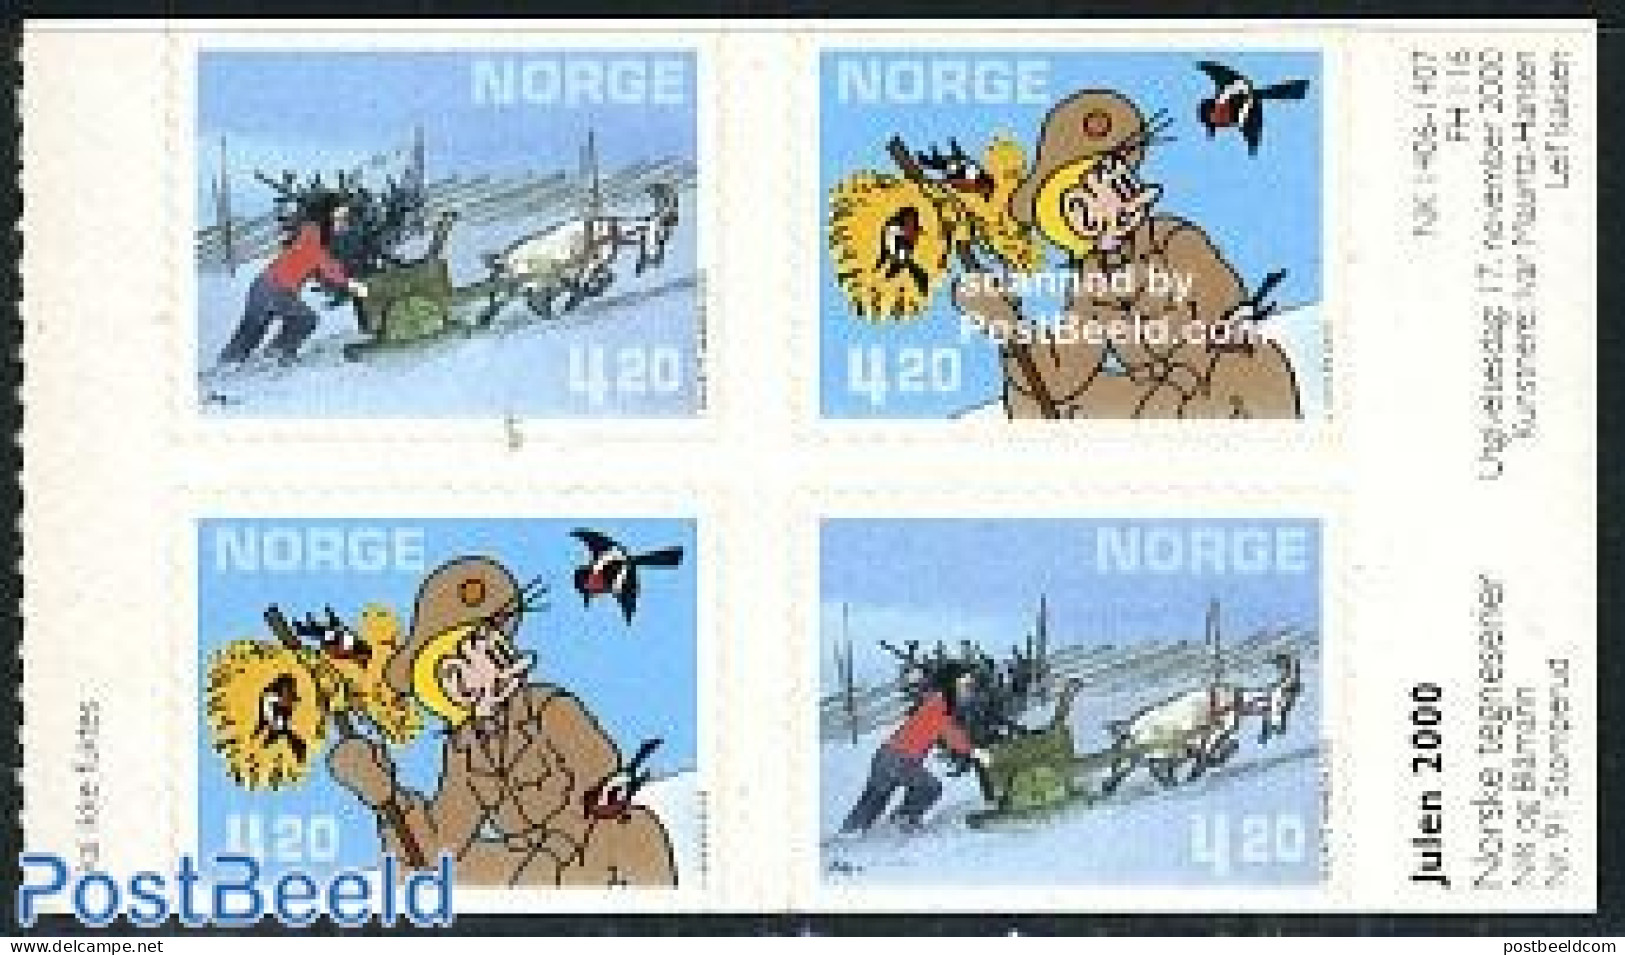 Norway 2000 Comics 2x2v S-a, Mint NH, Religion - Christmas - Art - Comics (except Disney) - Ongebruikt